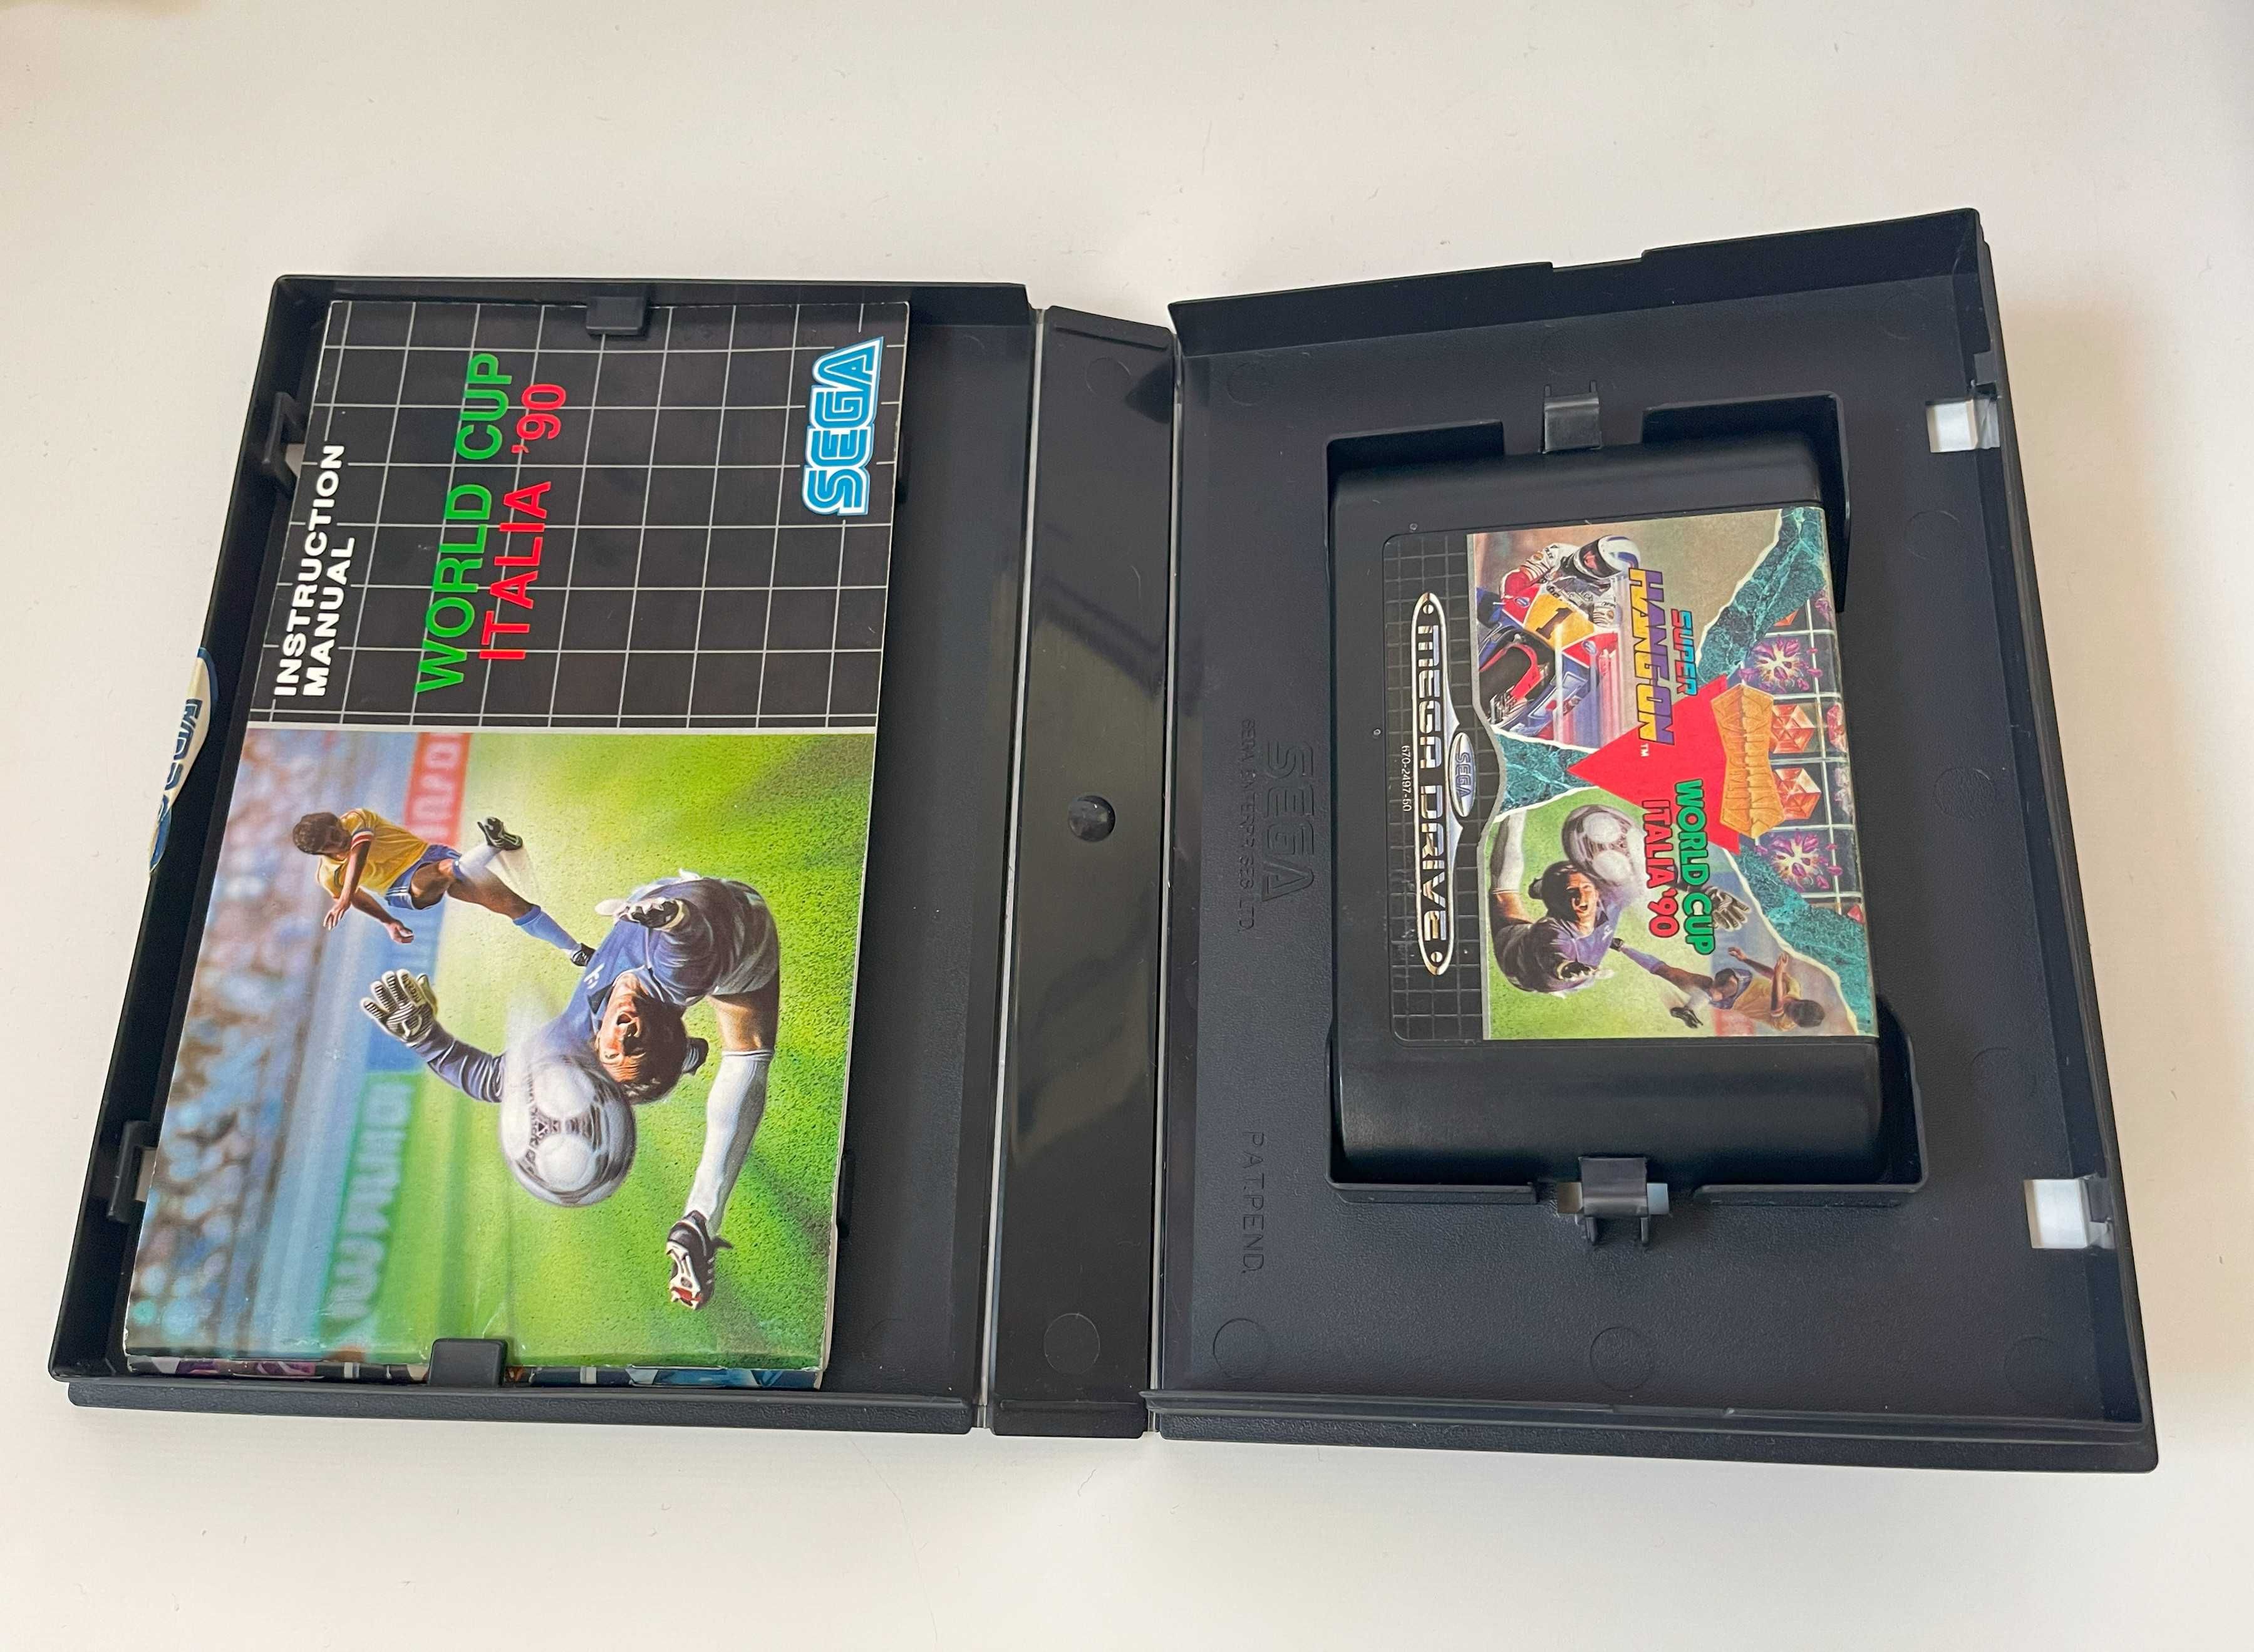 Mega Games I (Columns, Super Hang-On, World Cup) - Sega Mega Drive